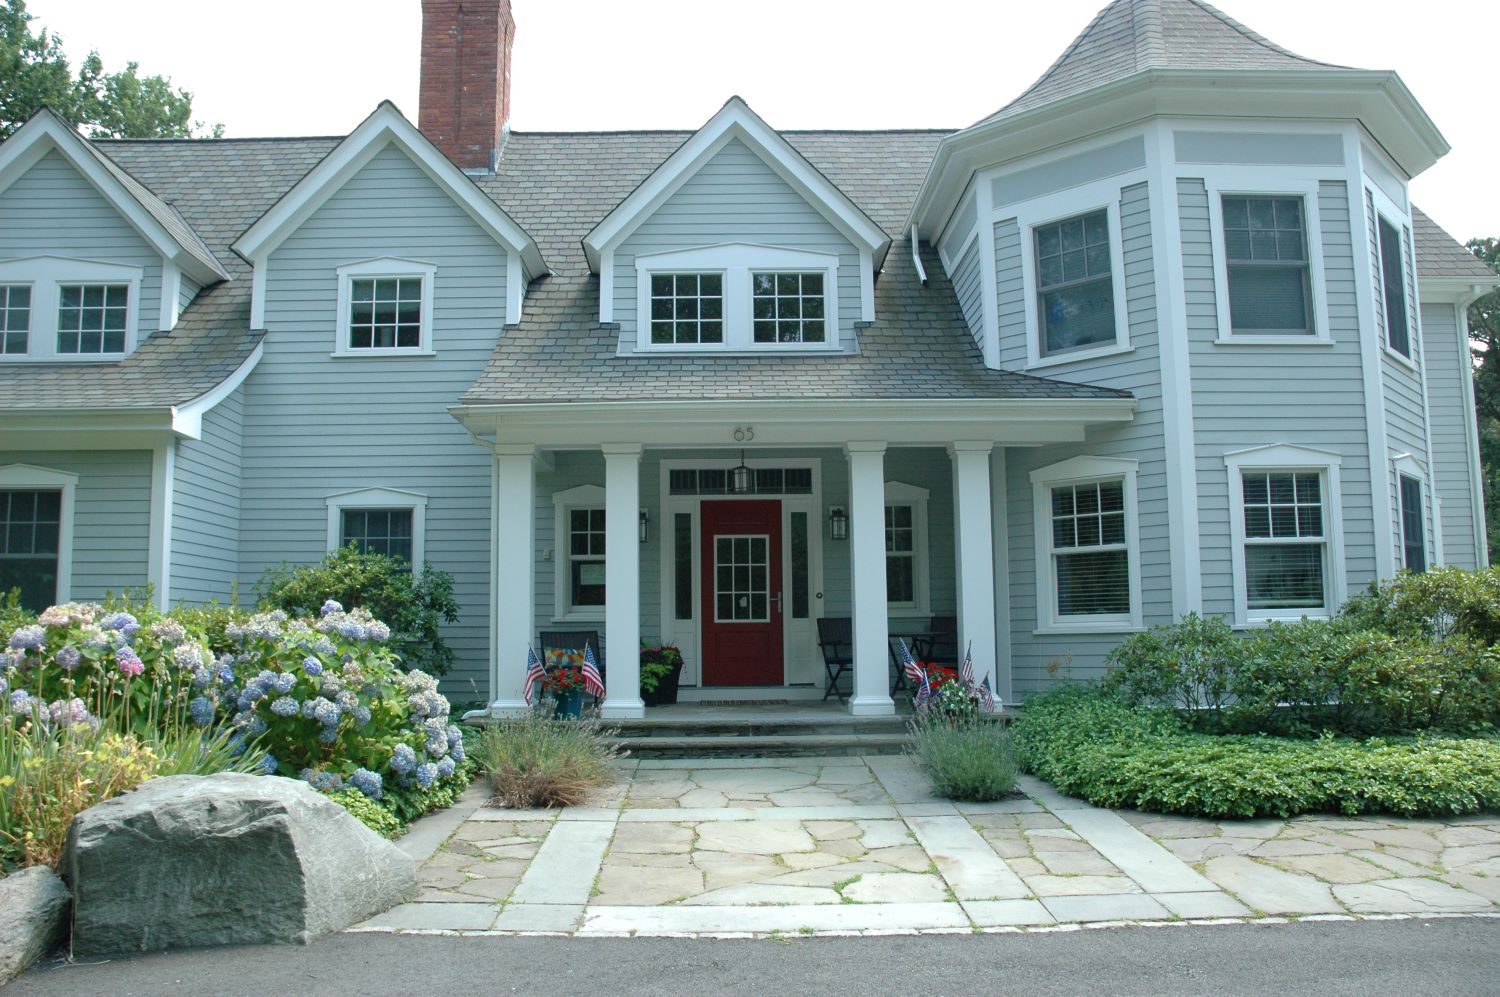 exterior view with red front door